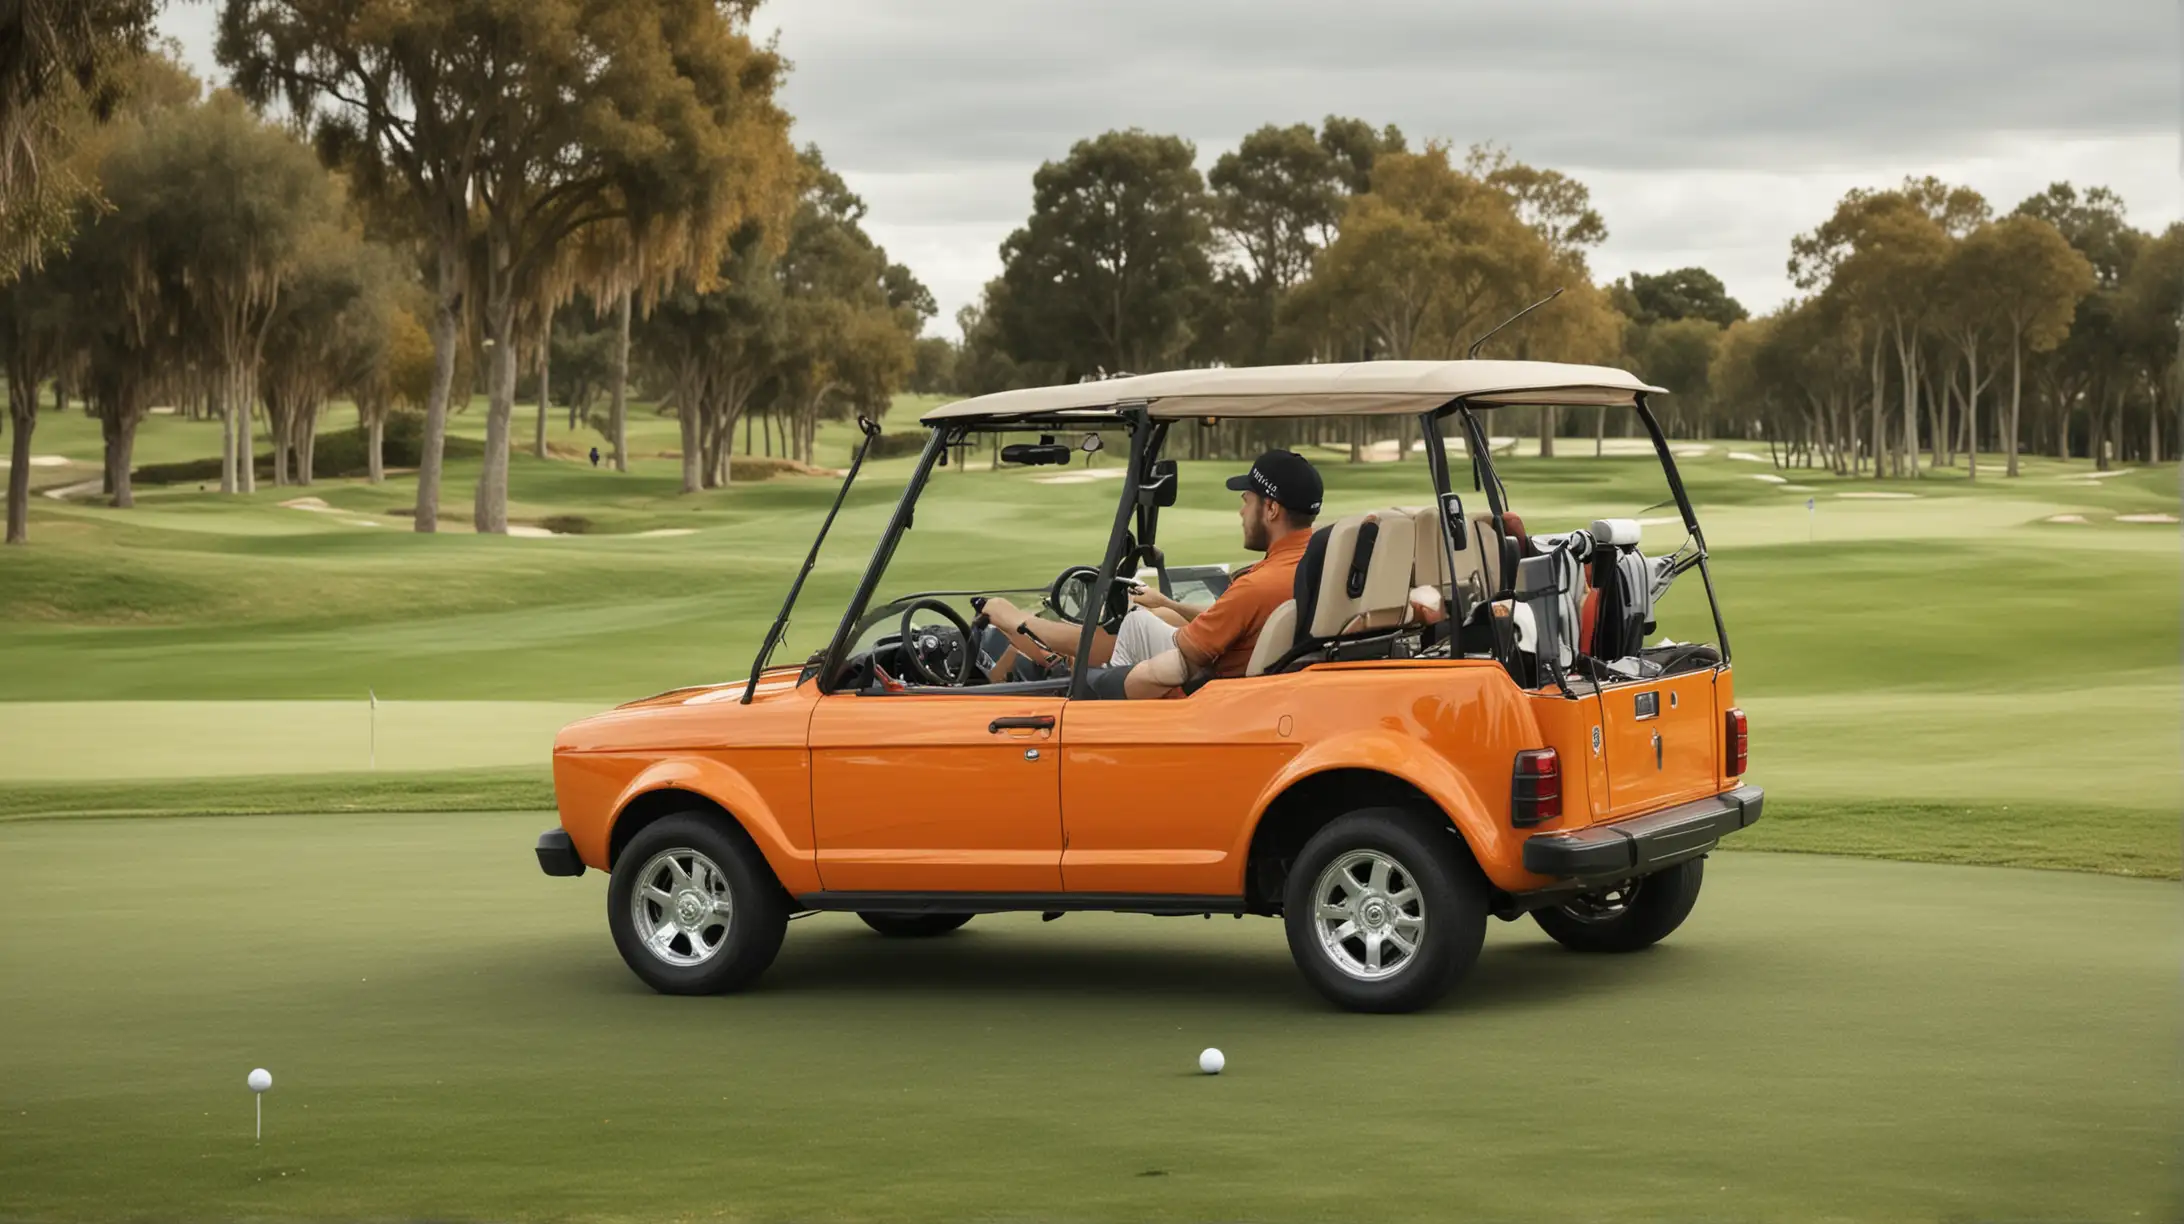 Golf Caddy Driving Through a Lush Green Golf Course